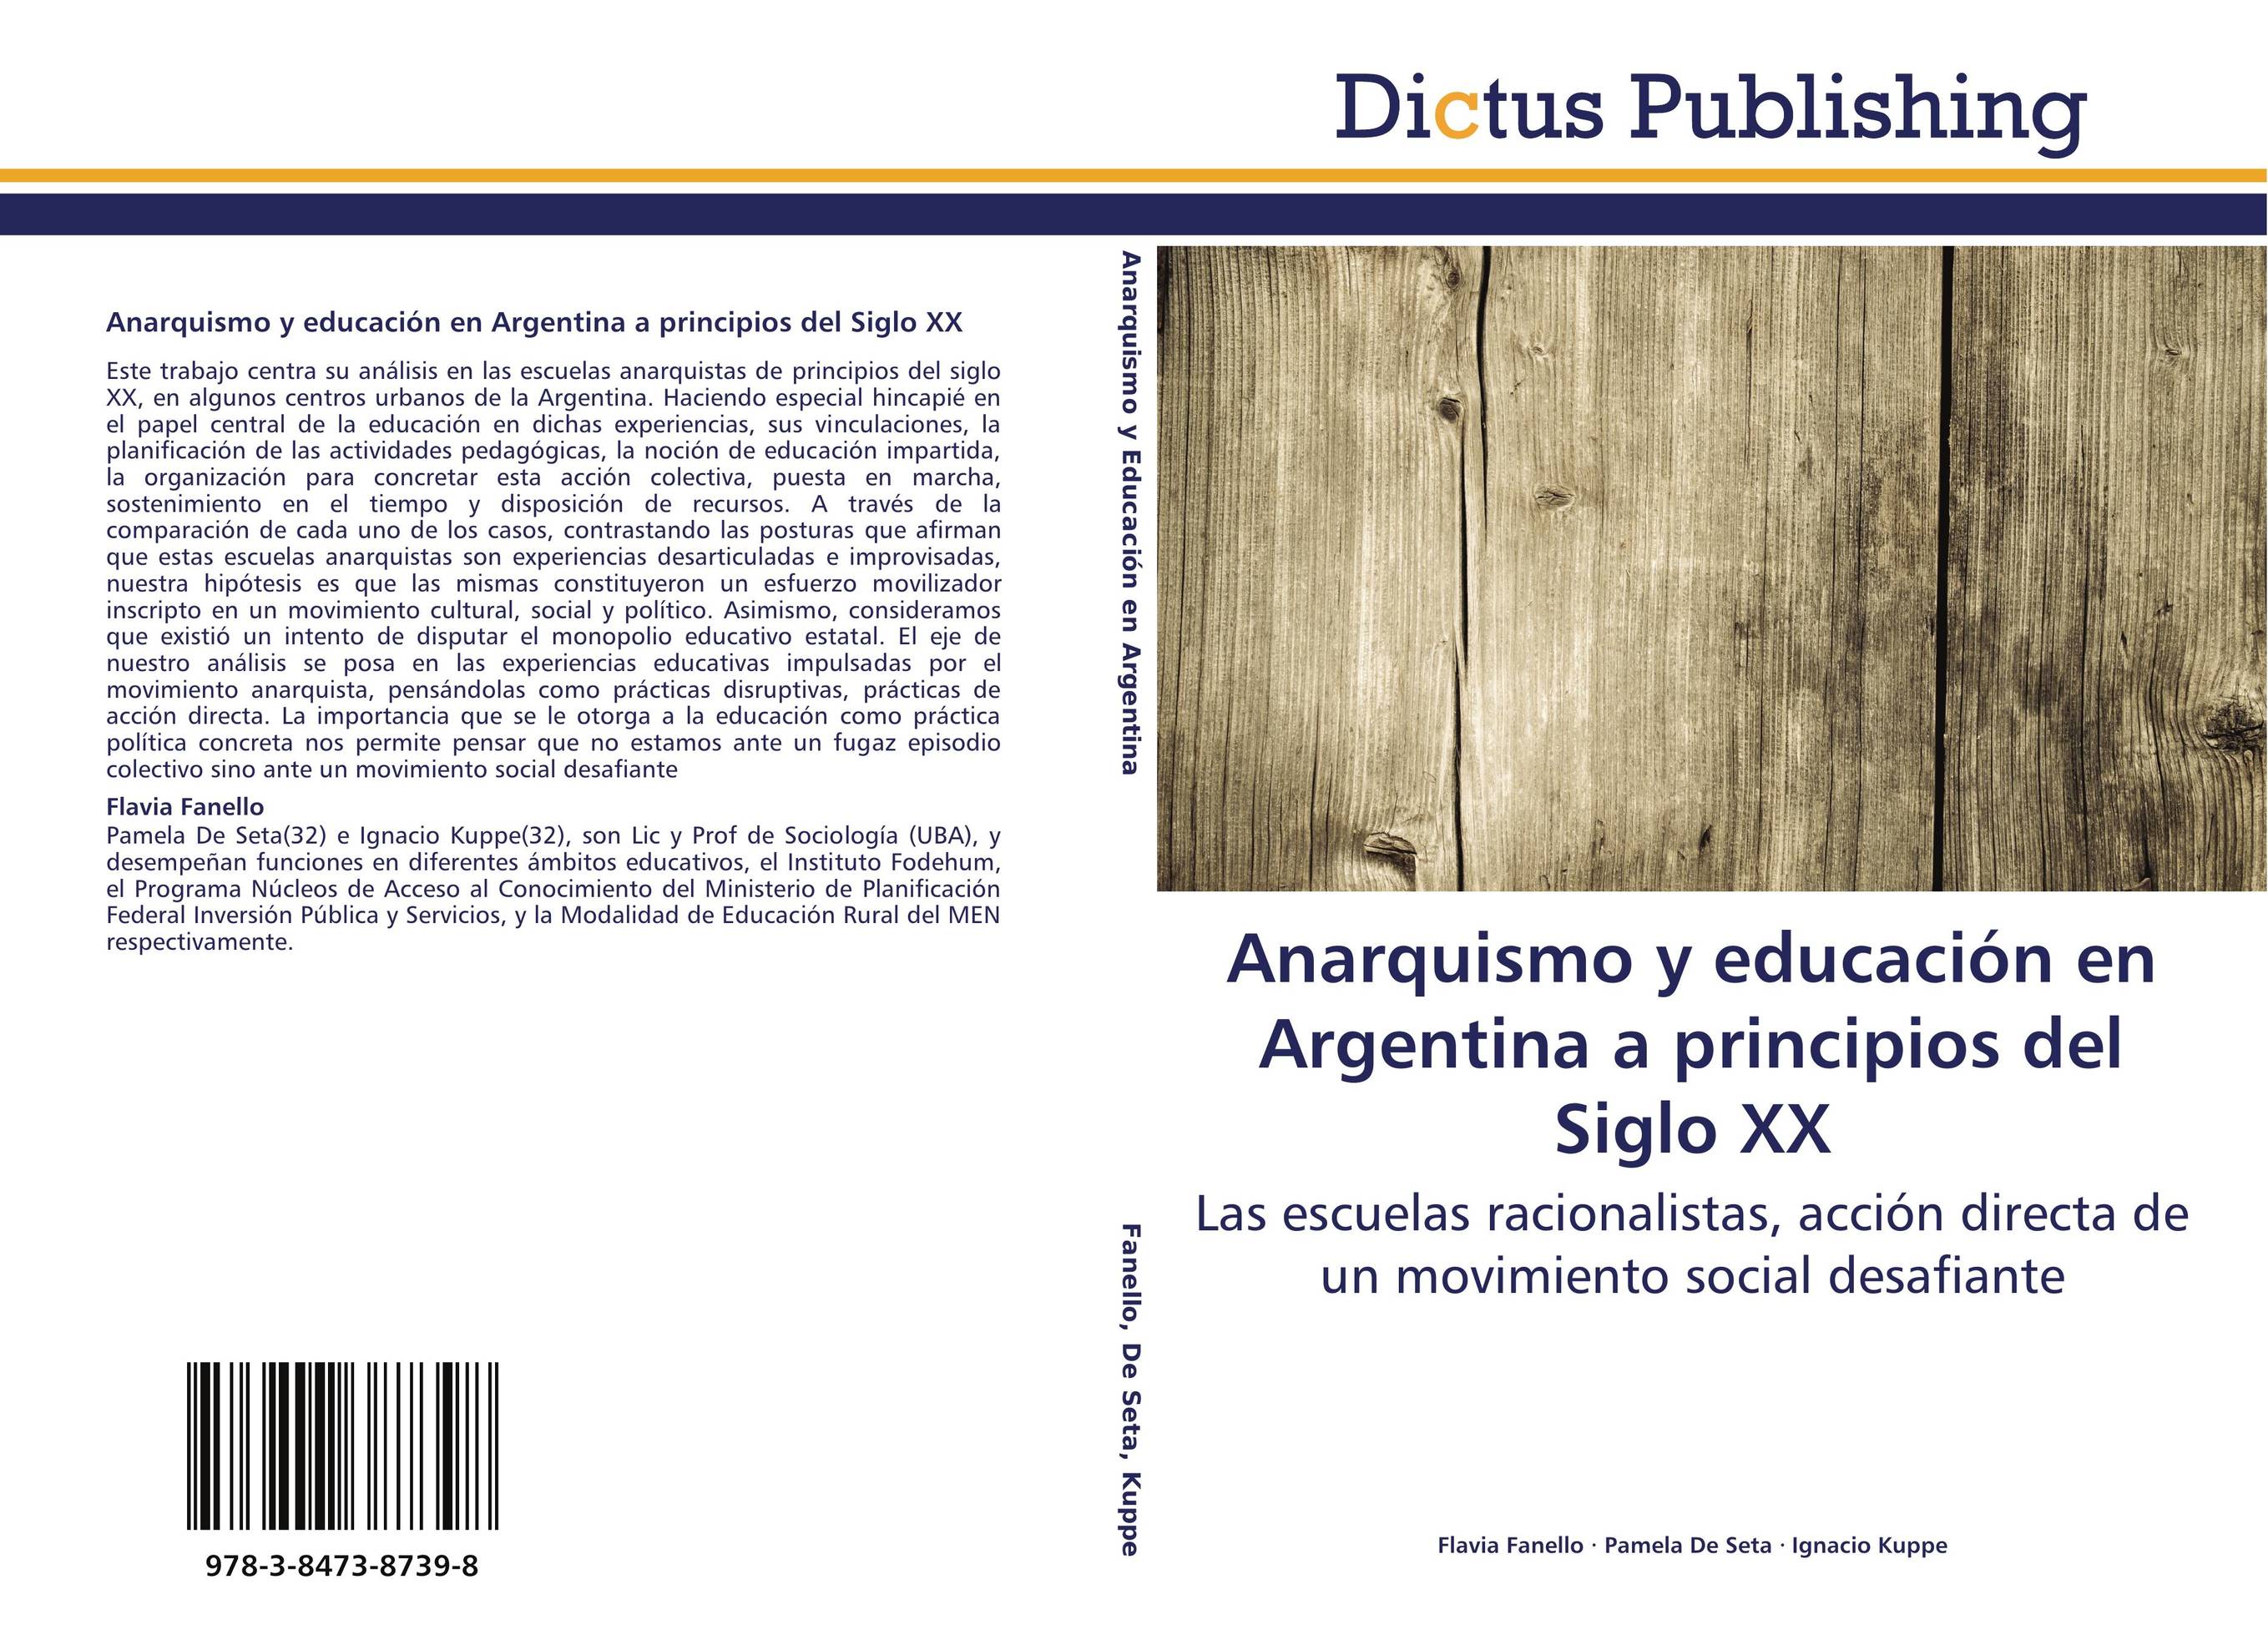 Anarquismo y educación en Argentina a principios del Siglo XX